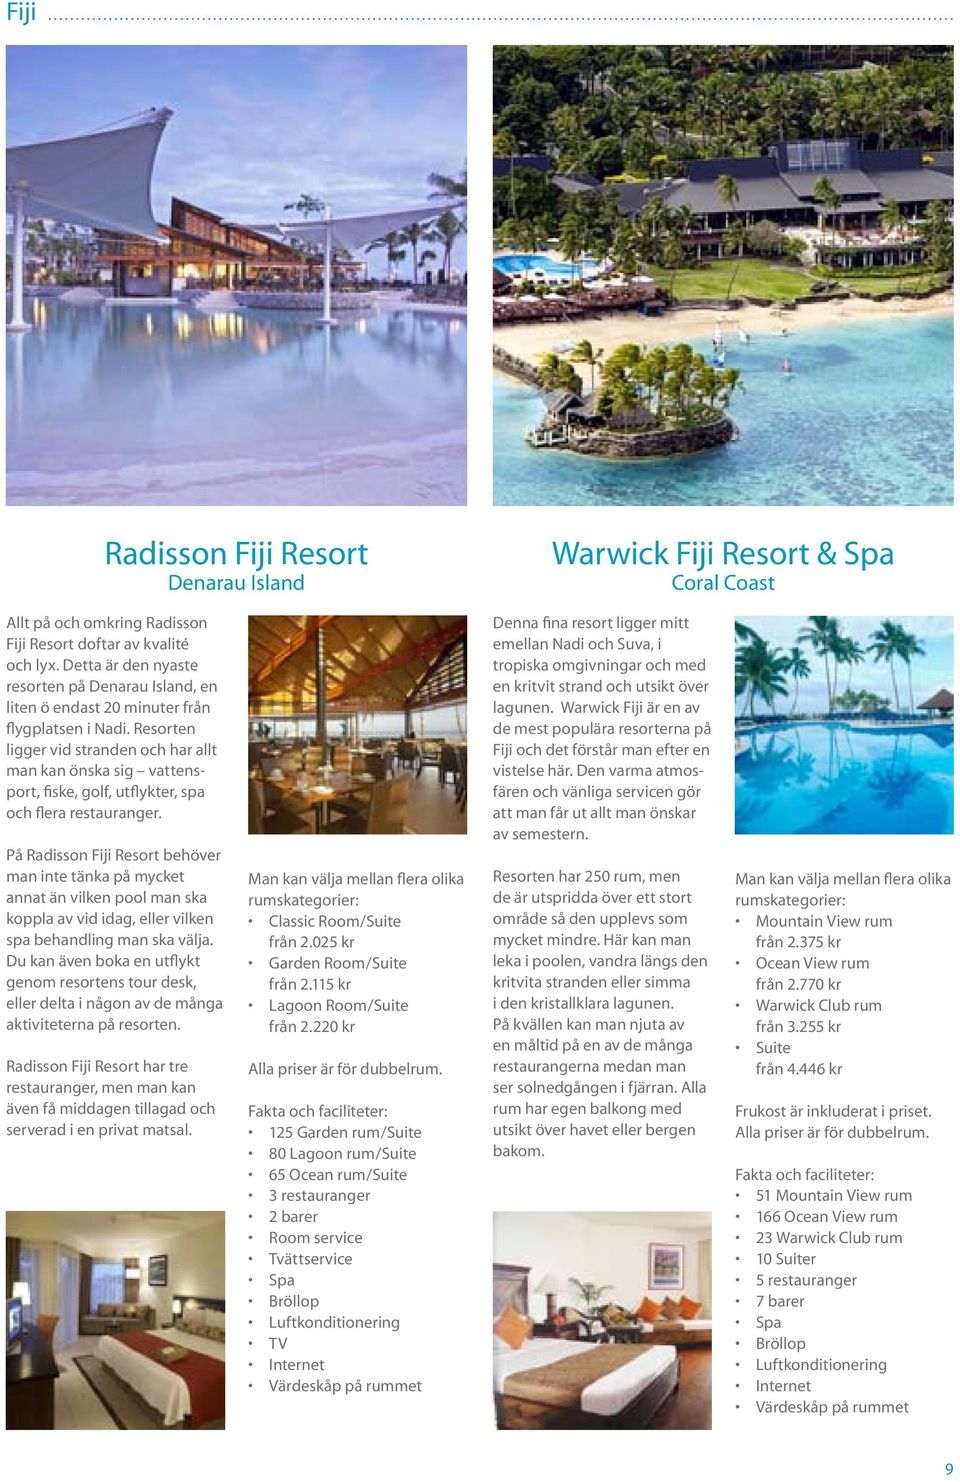 Resorten ligger vid stranden och har allt man kan önska sig vattensport, fiske, golf, utflykter, spa och flera restauranger.